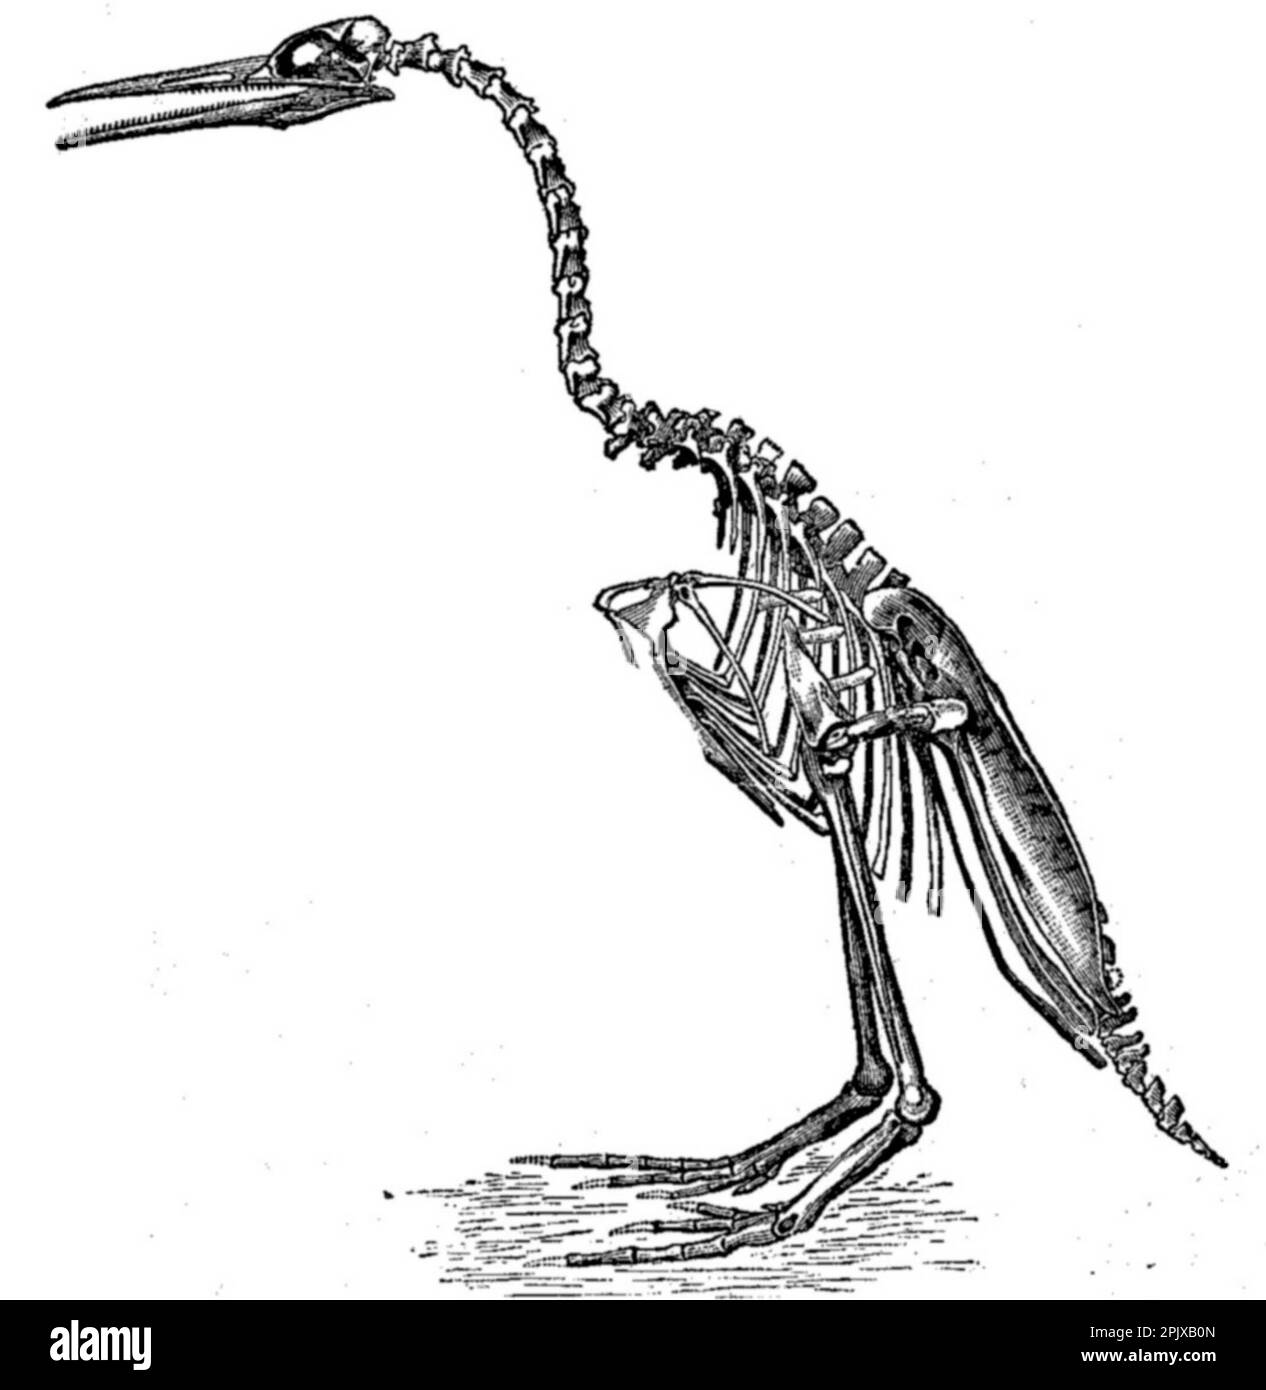 Hesperornis regalis, una especie de antiguo pájaro sin vuelo con dientes, dibujado por Othniel Marsh, y publicado en su libro, Odontornithes: Una monografía sobre las aves dentadas extintas de América del Norte. Foto de stock